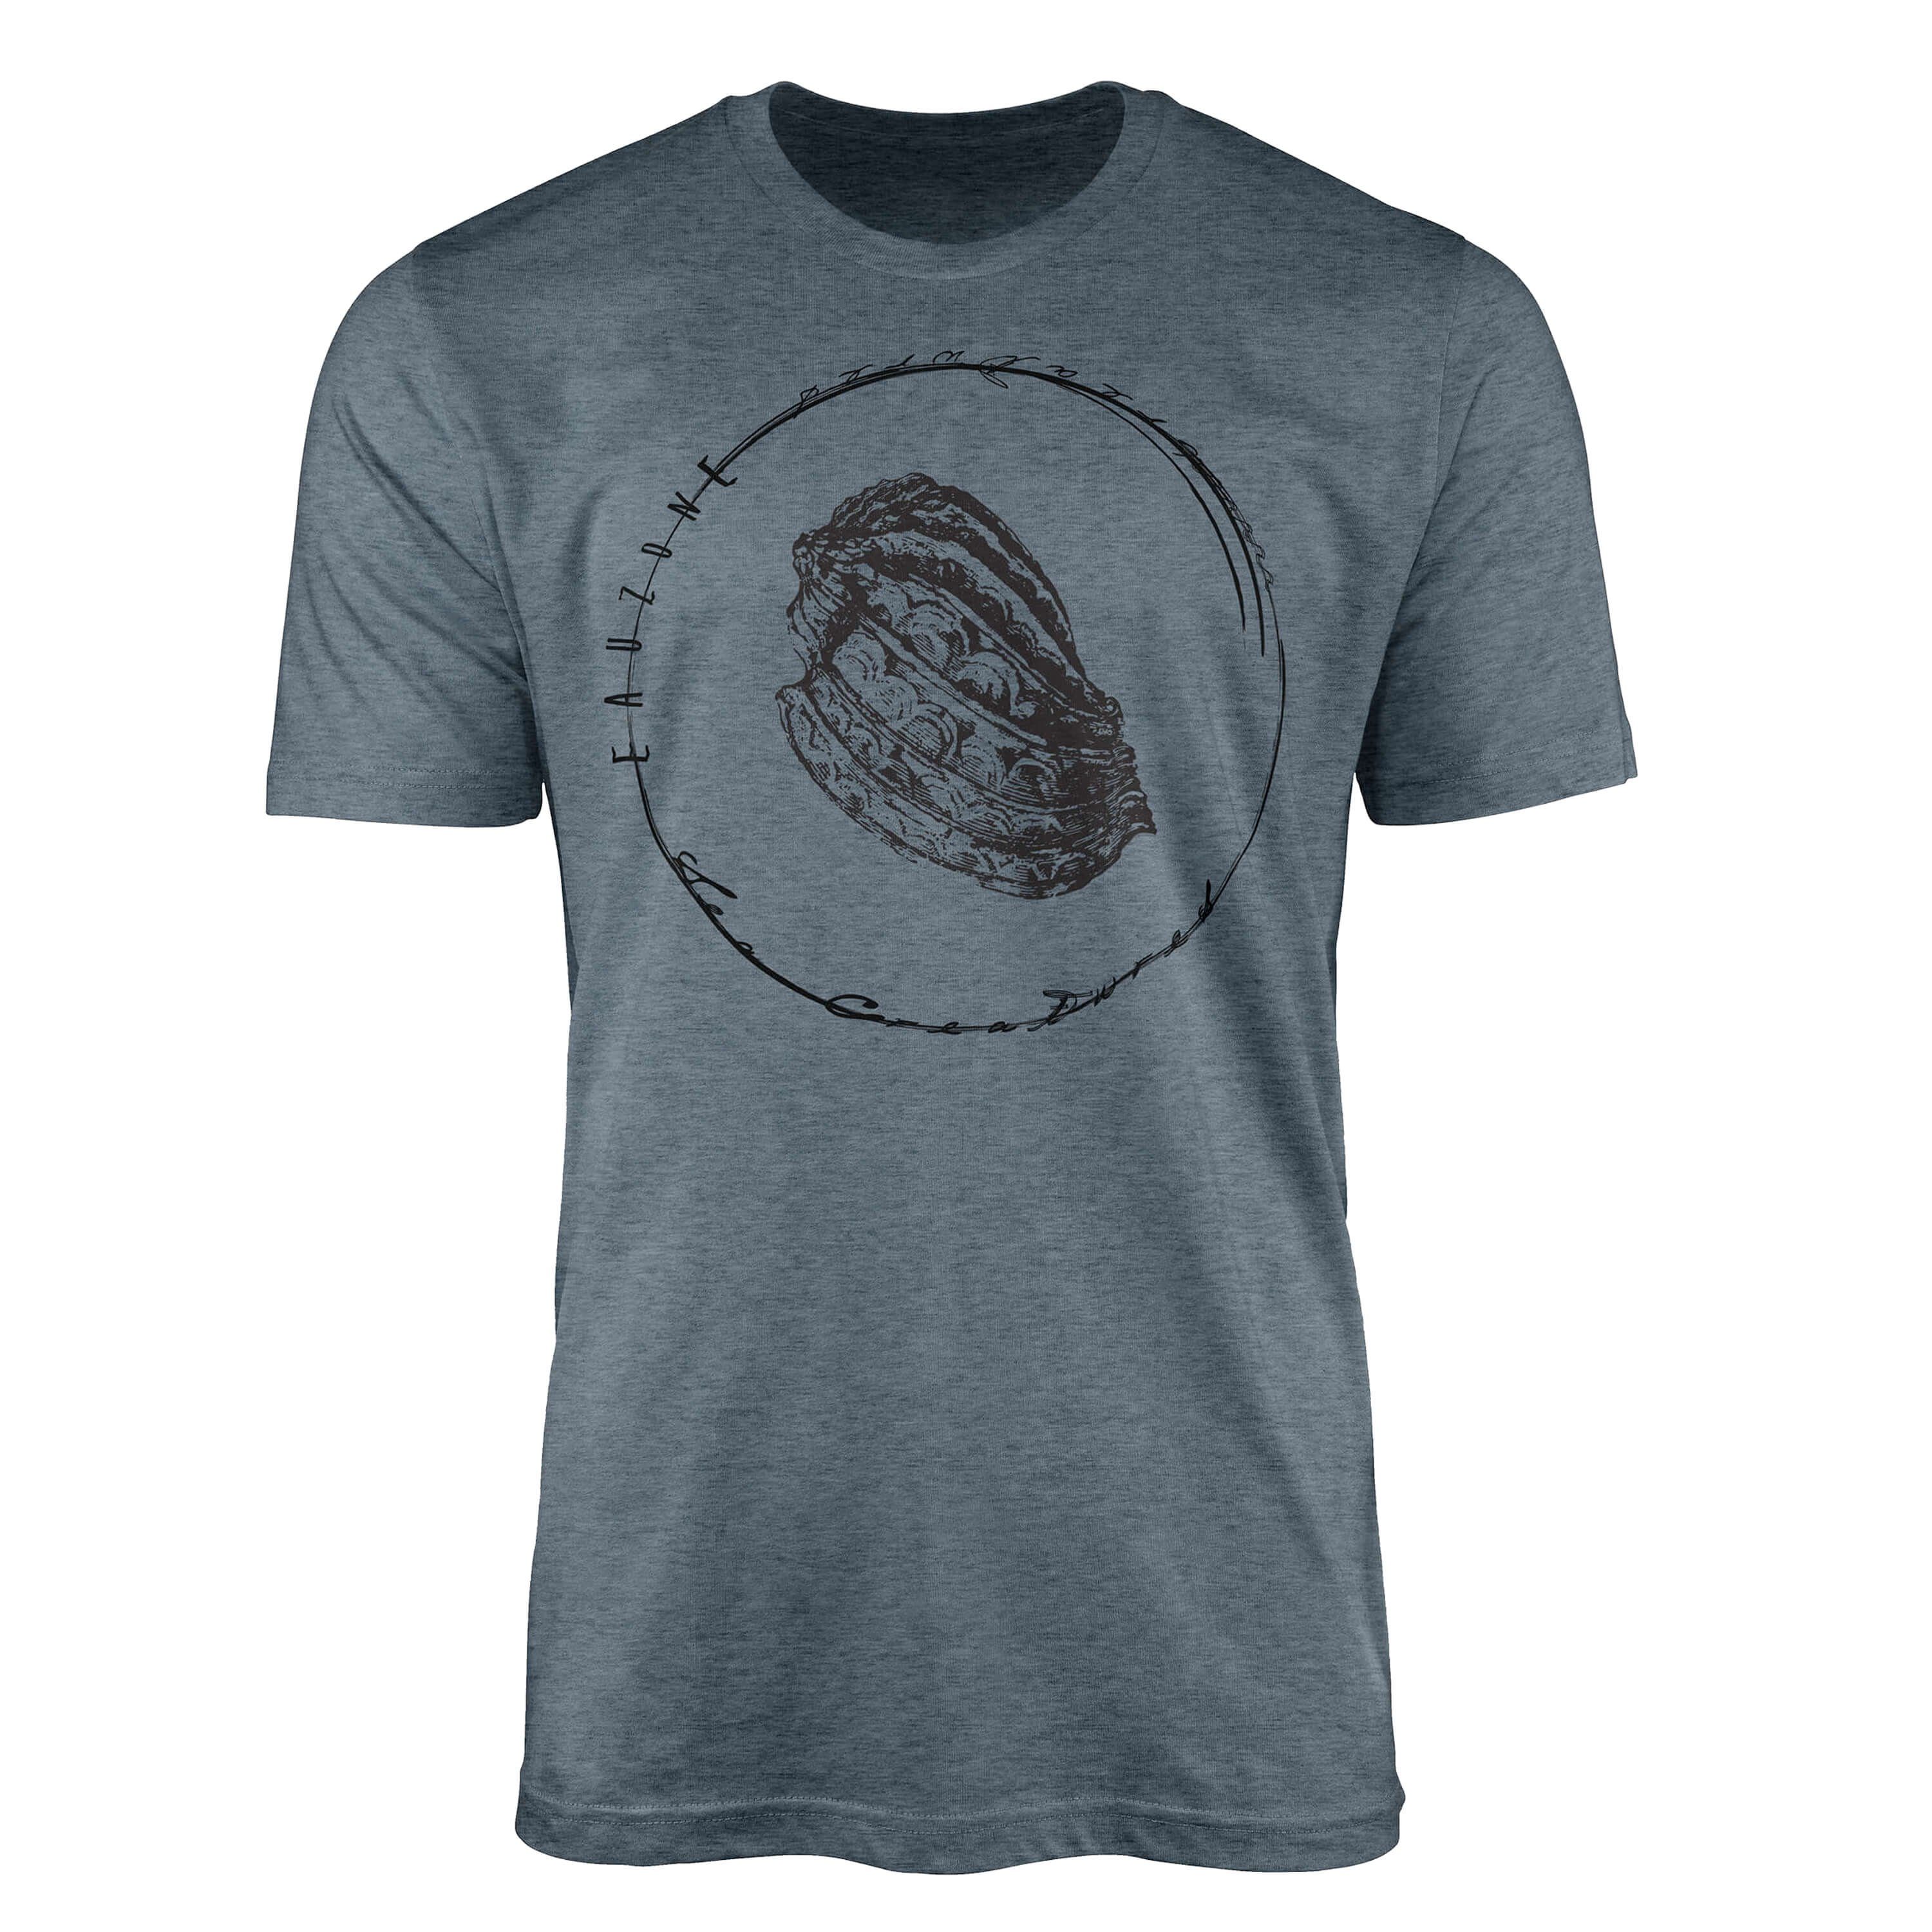 T-Shirt Art Tiefsee - Indigo Sinus 072 T-Shirt Struktur und Serie: Fische Schnitt / Sea feine sportlicher Creatures, Sea